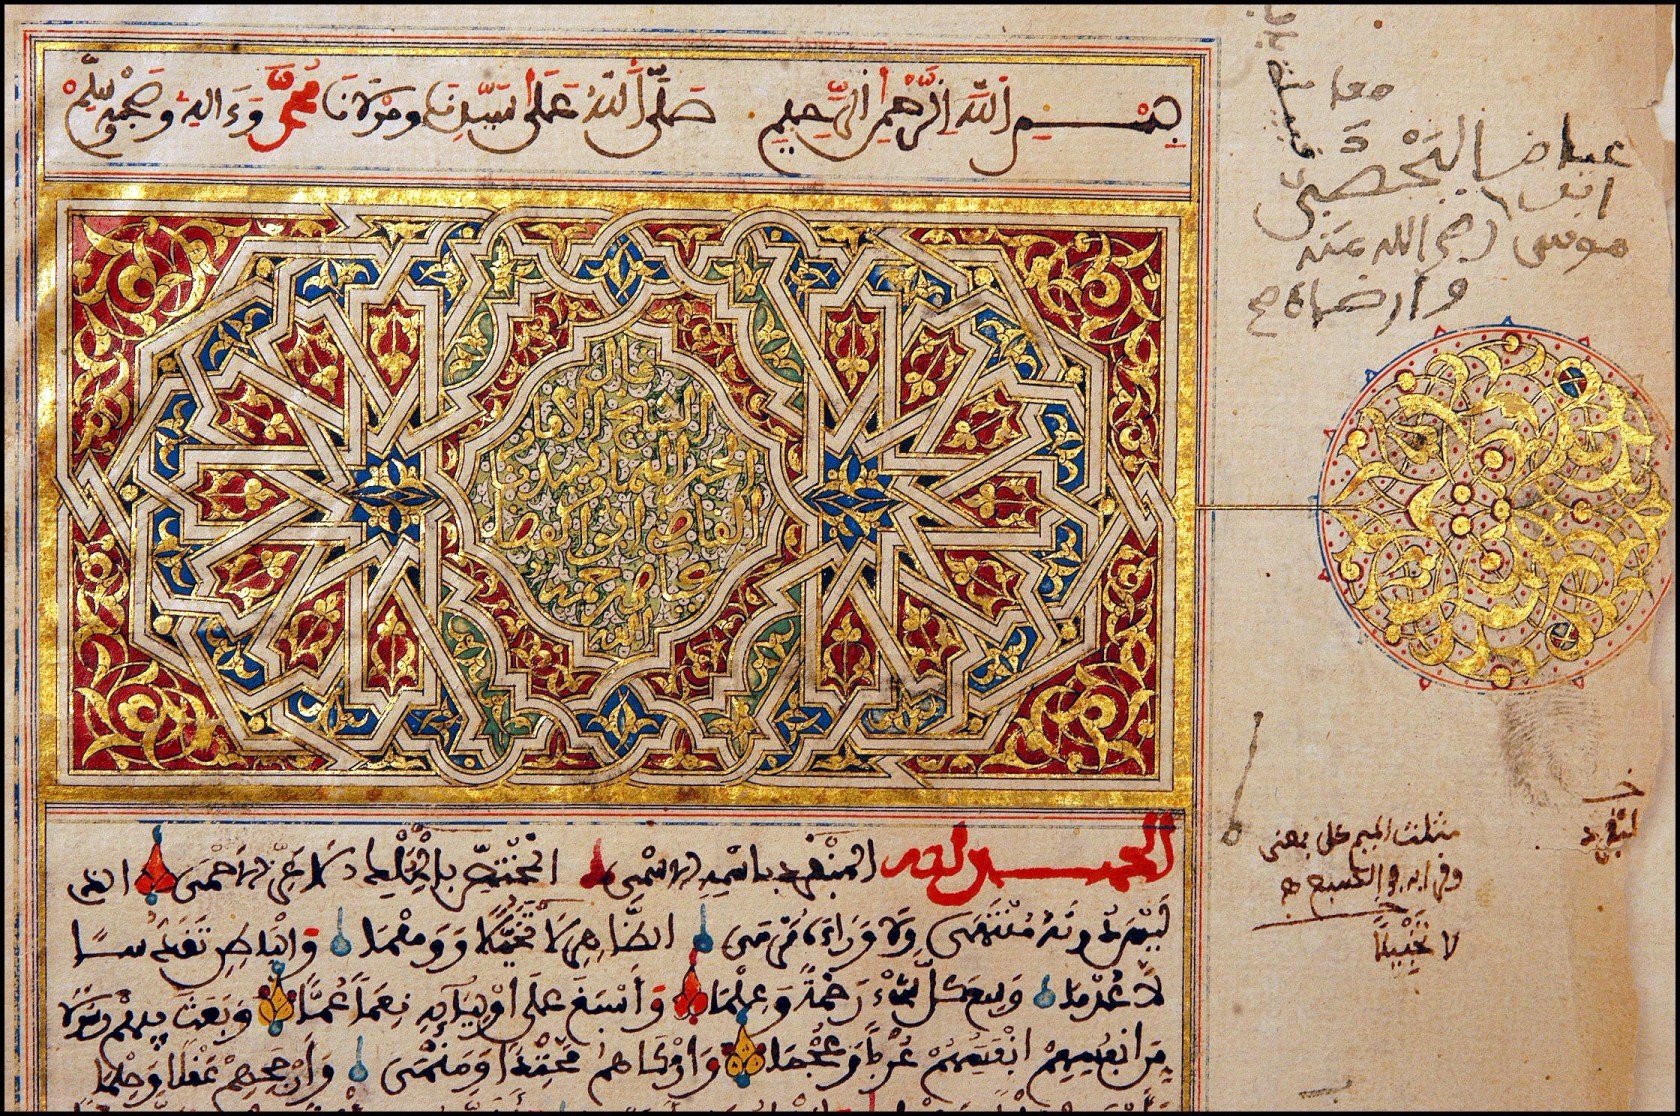 timbuktu manuscripts